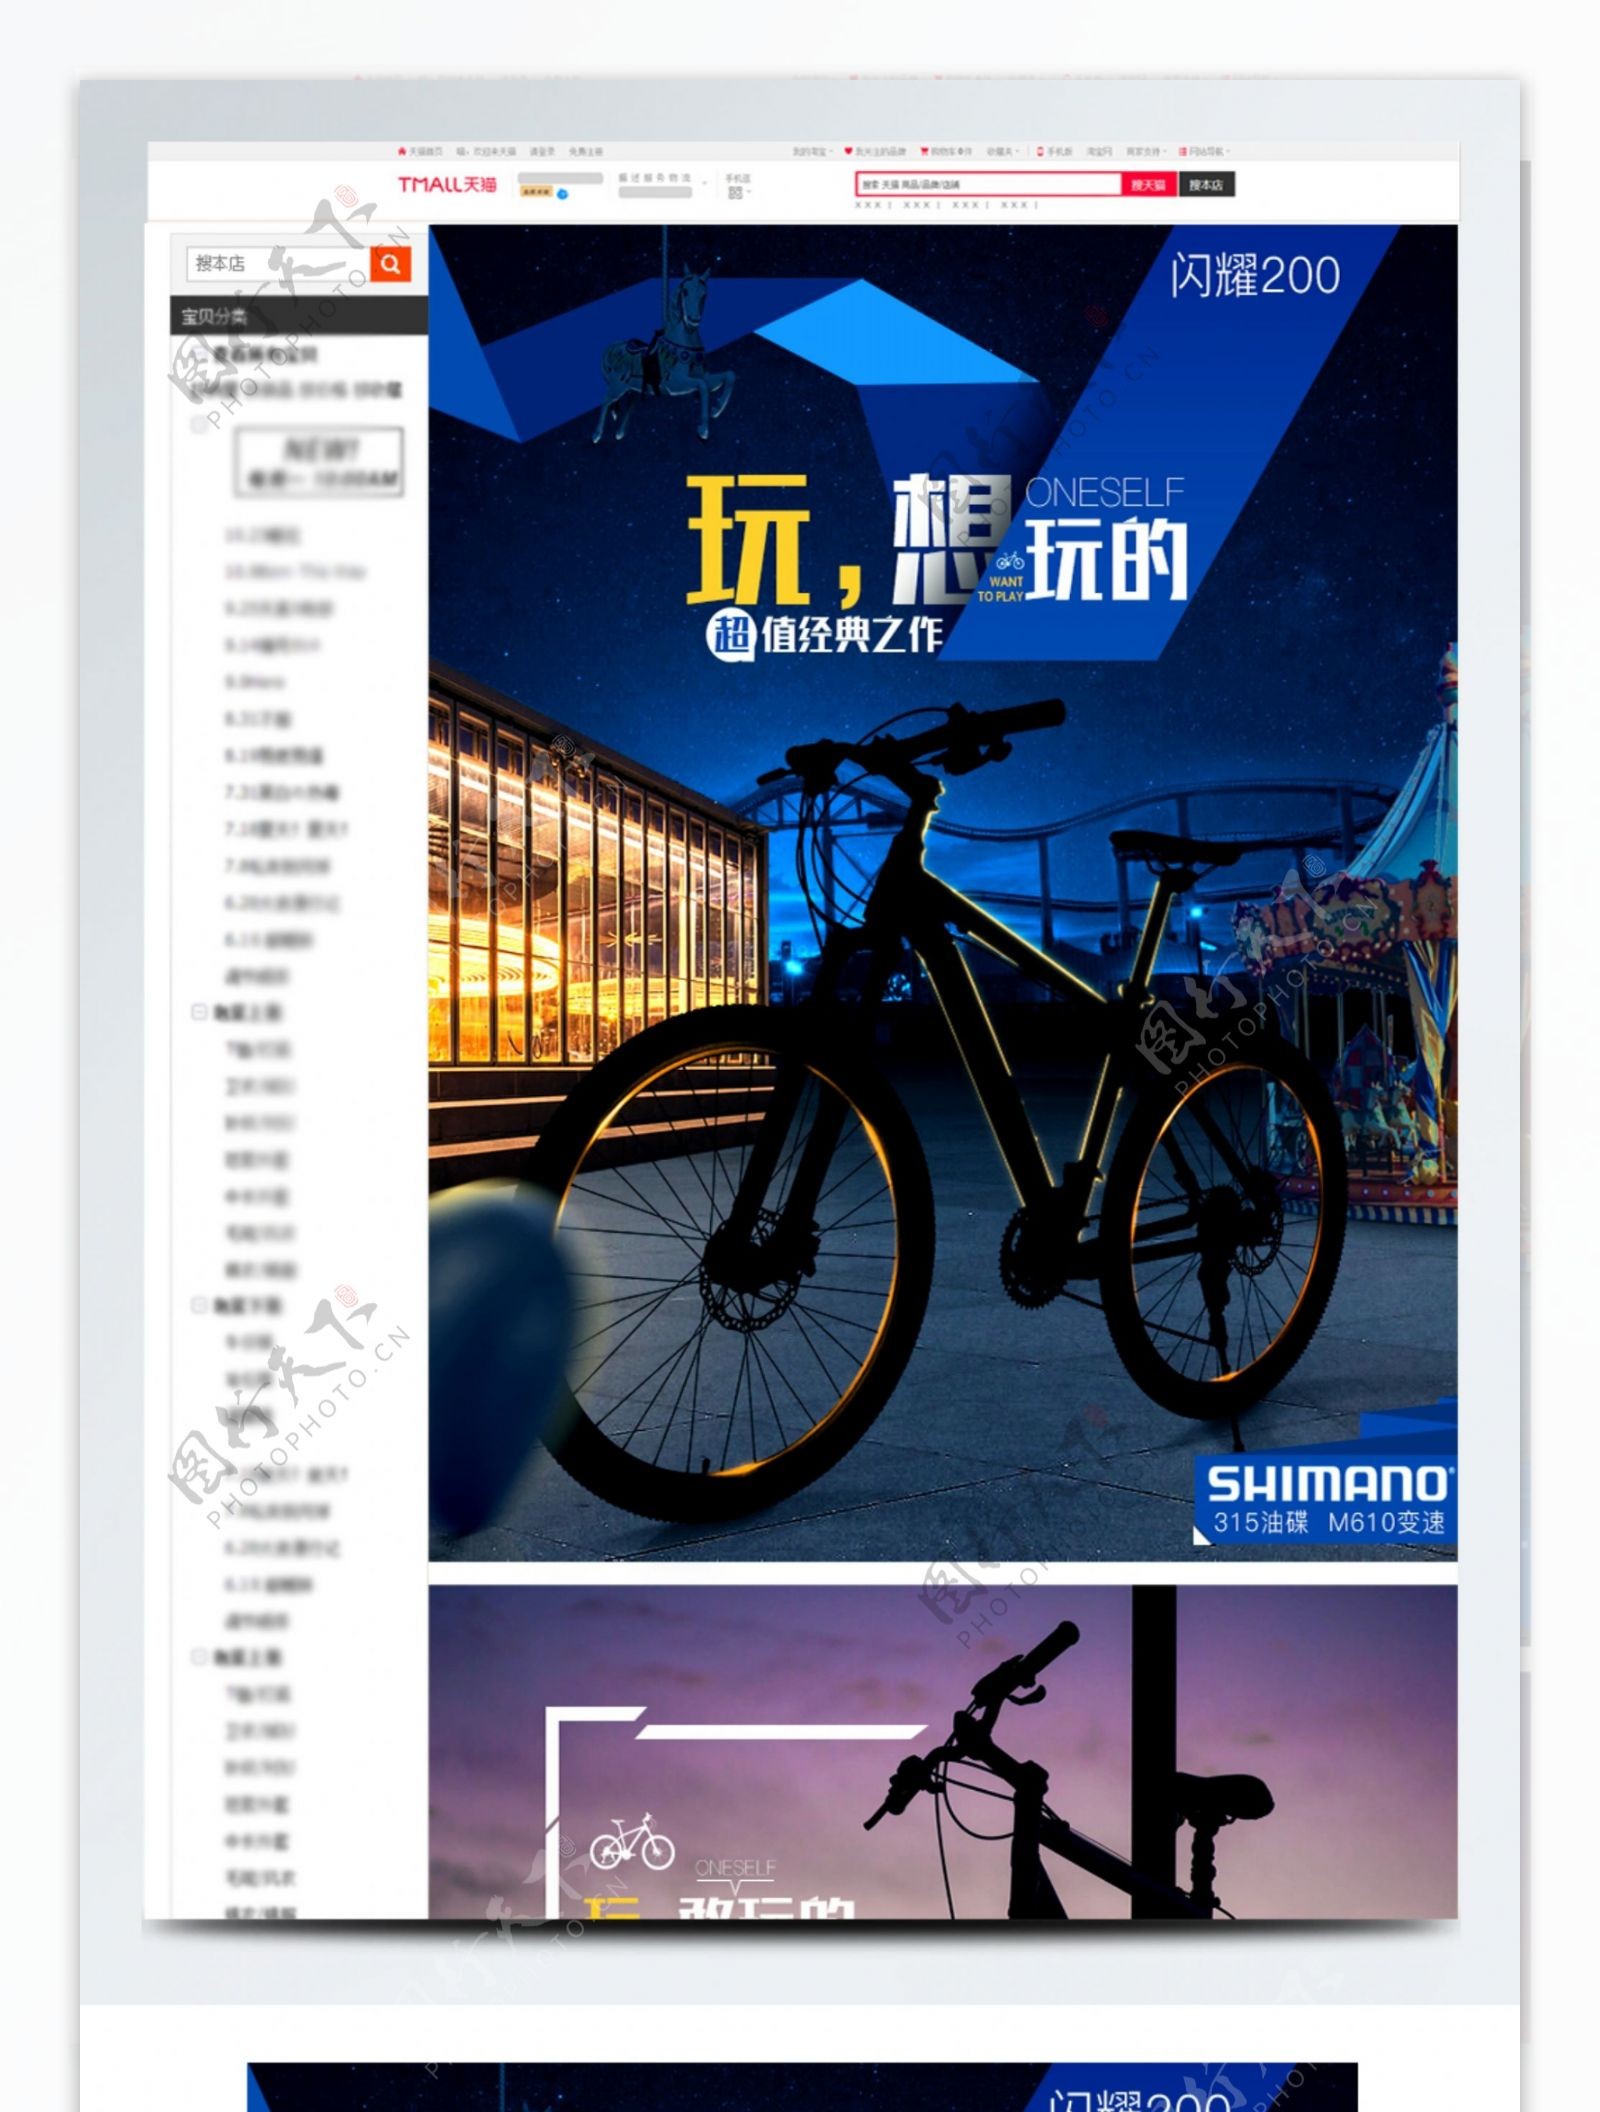 蓝色淘宝山地自行车车详情页PSD模板描述